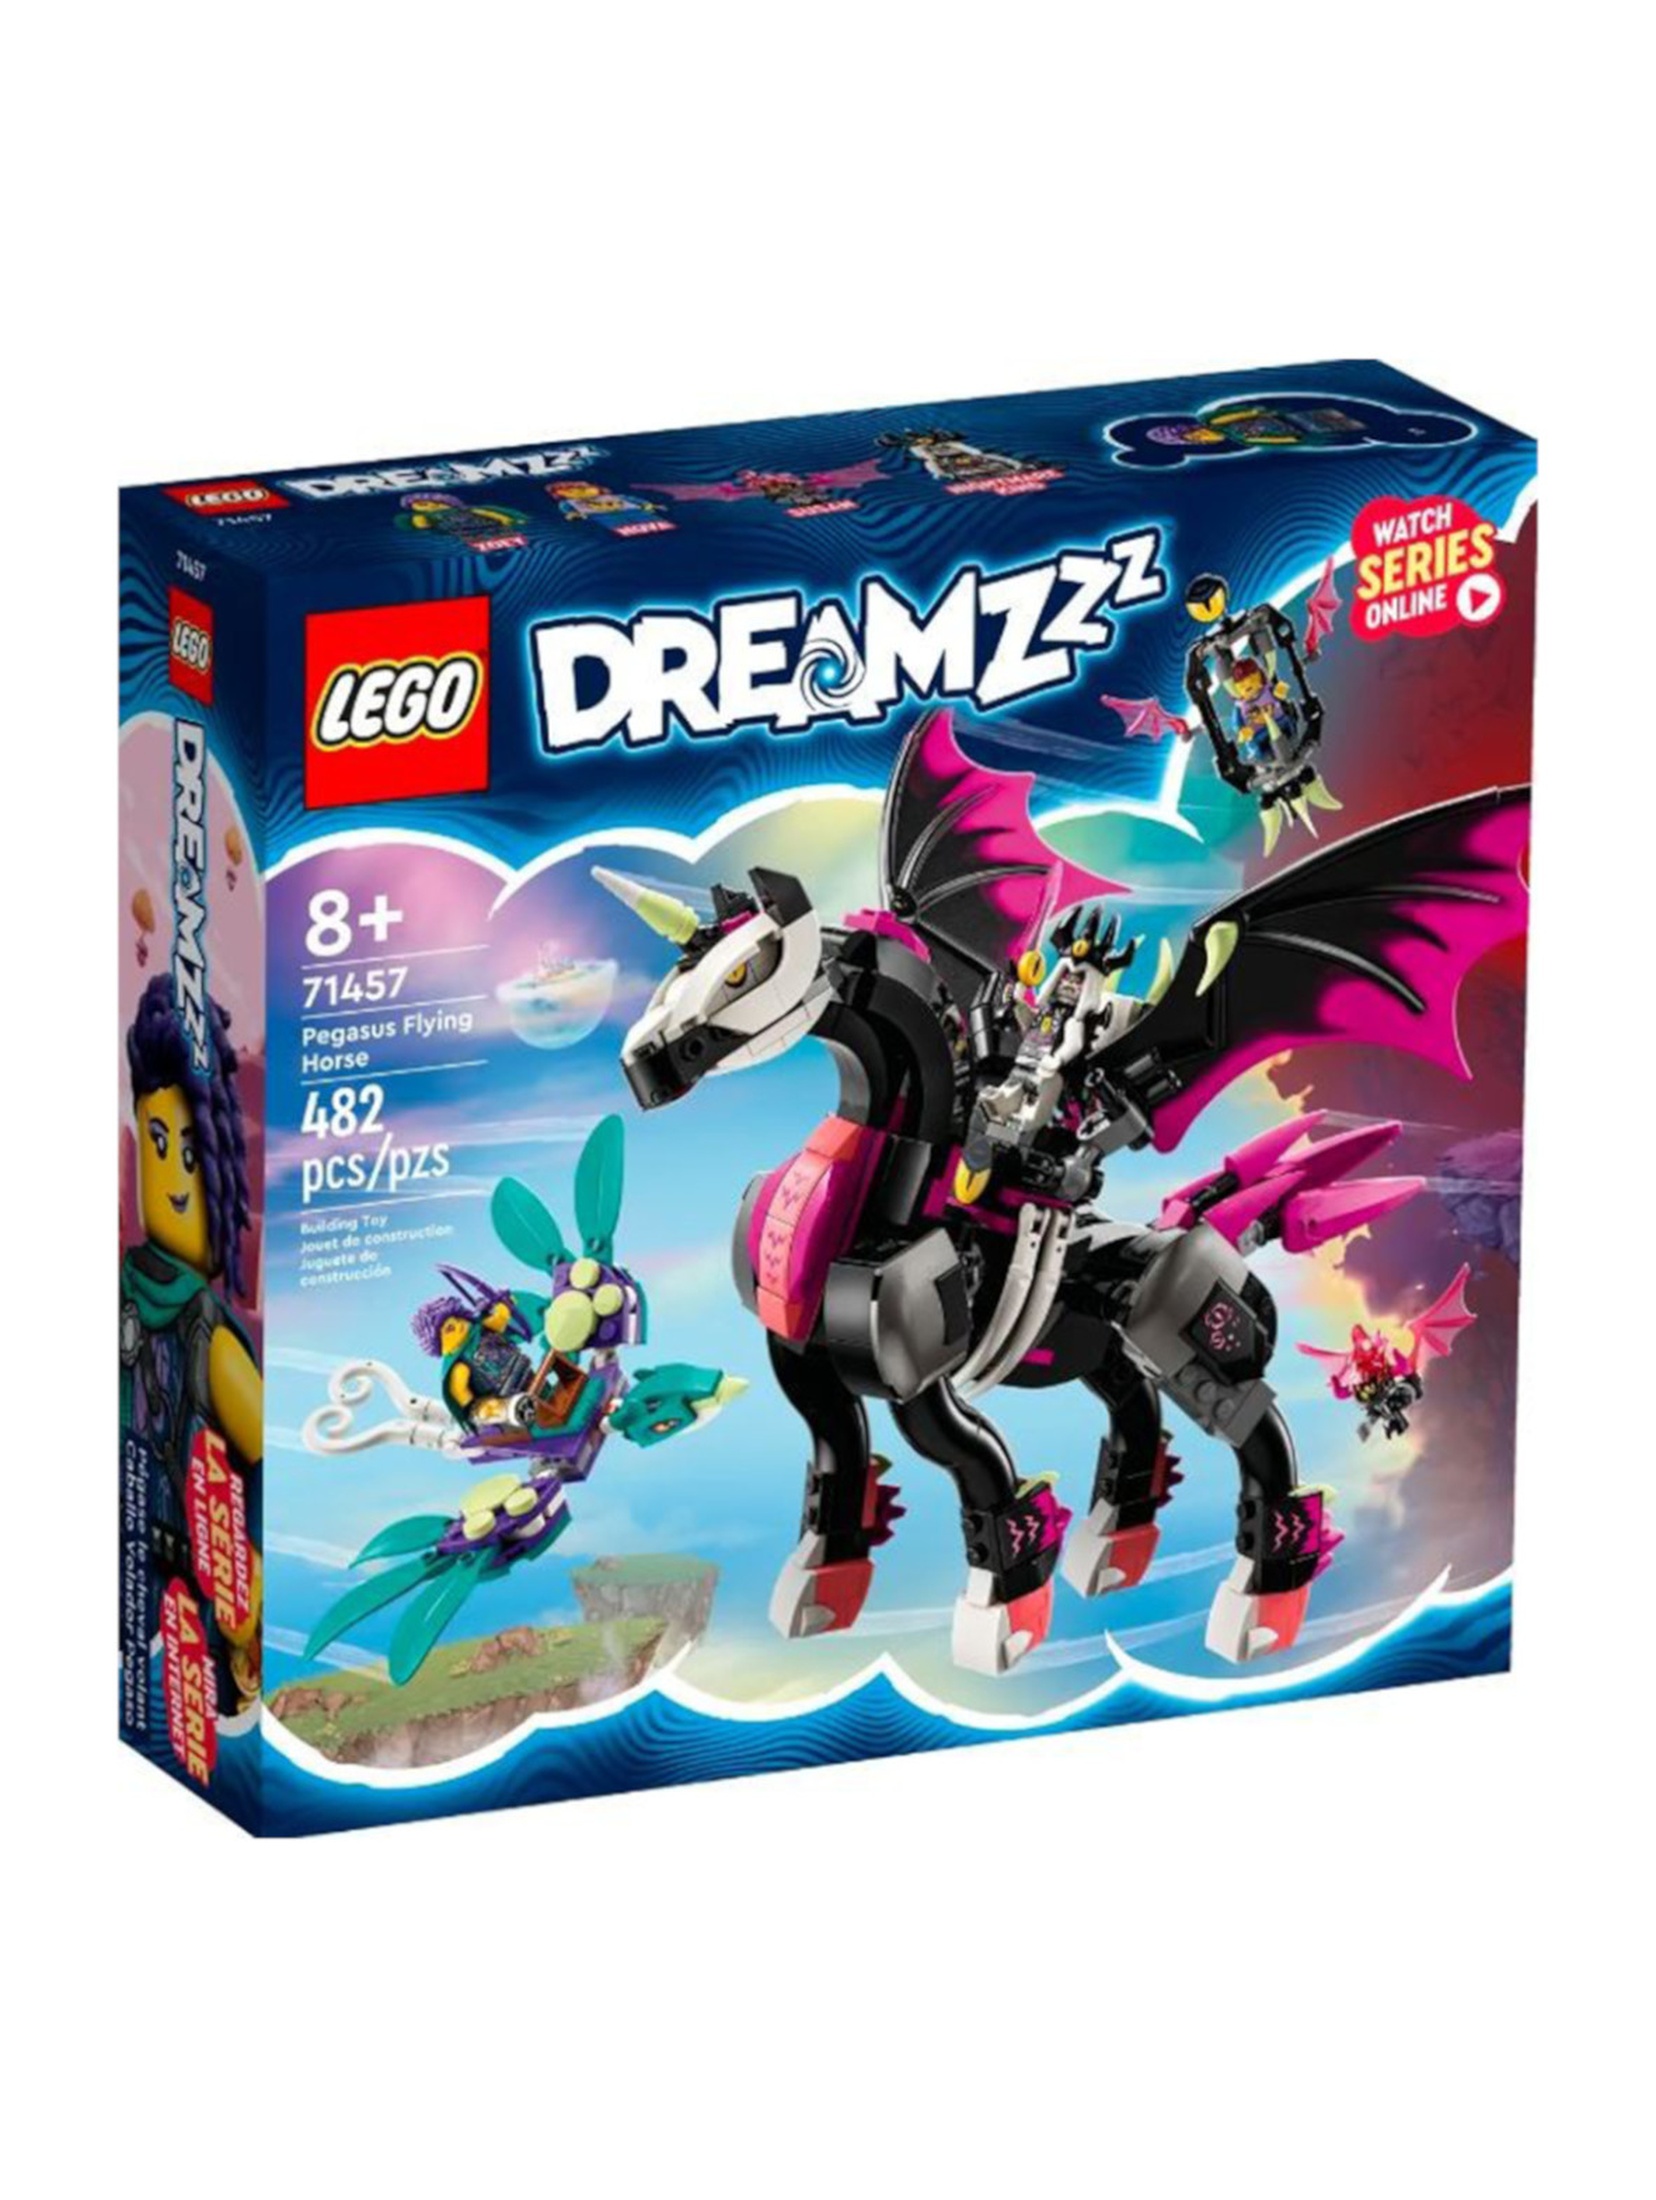 Klocki LEGO DREAMZzz 71457 Latający koń Pegasus - 482 elemnty, wiek 8 +